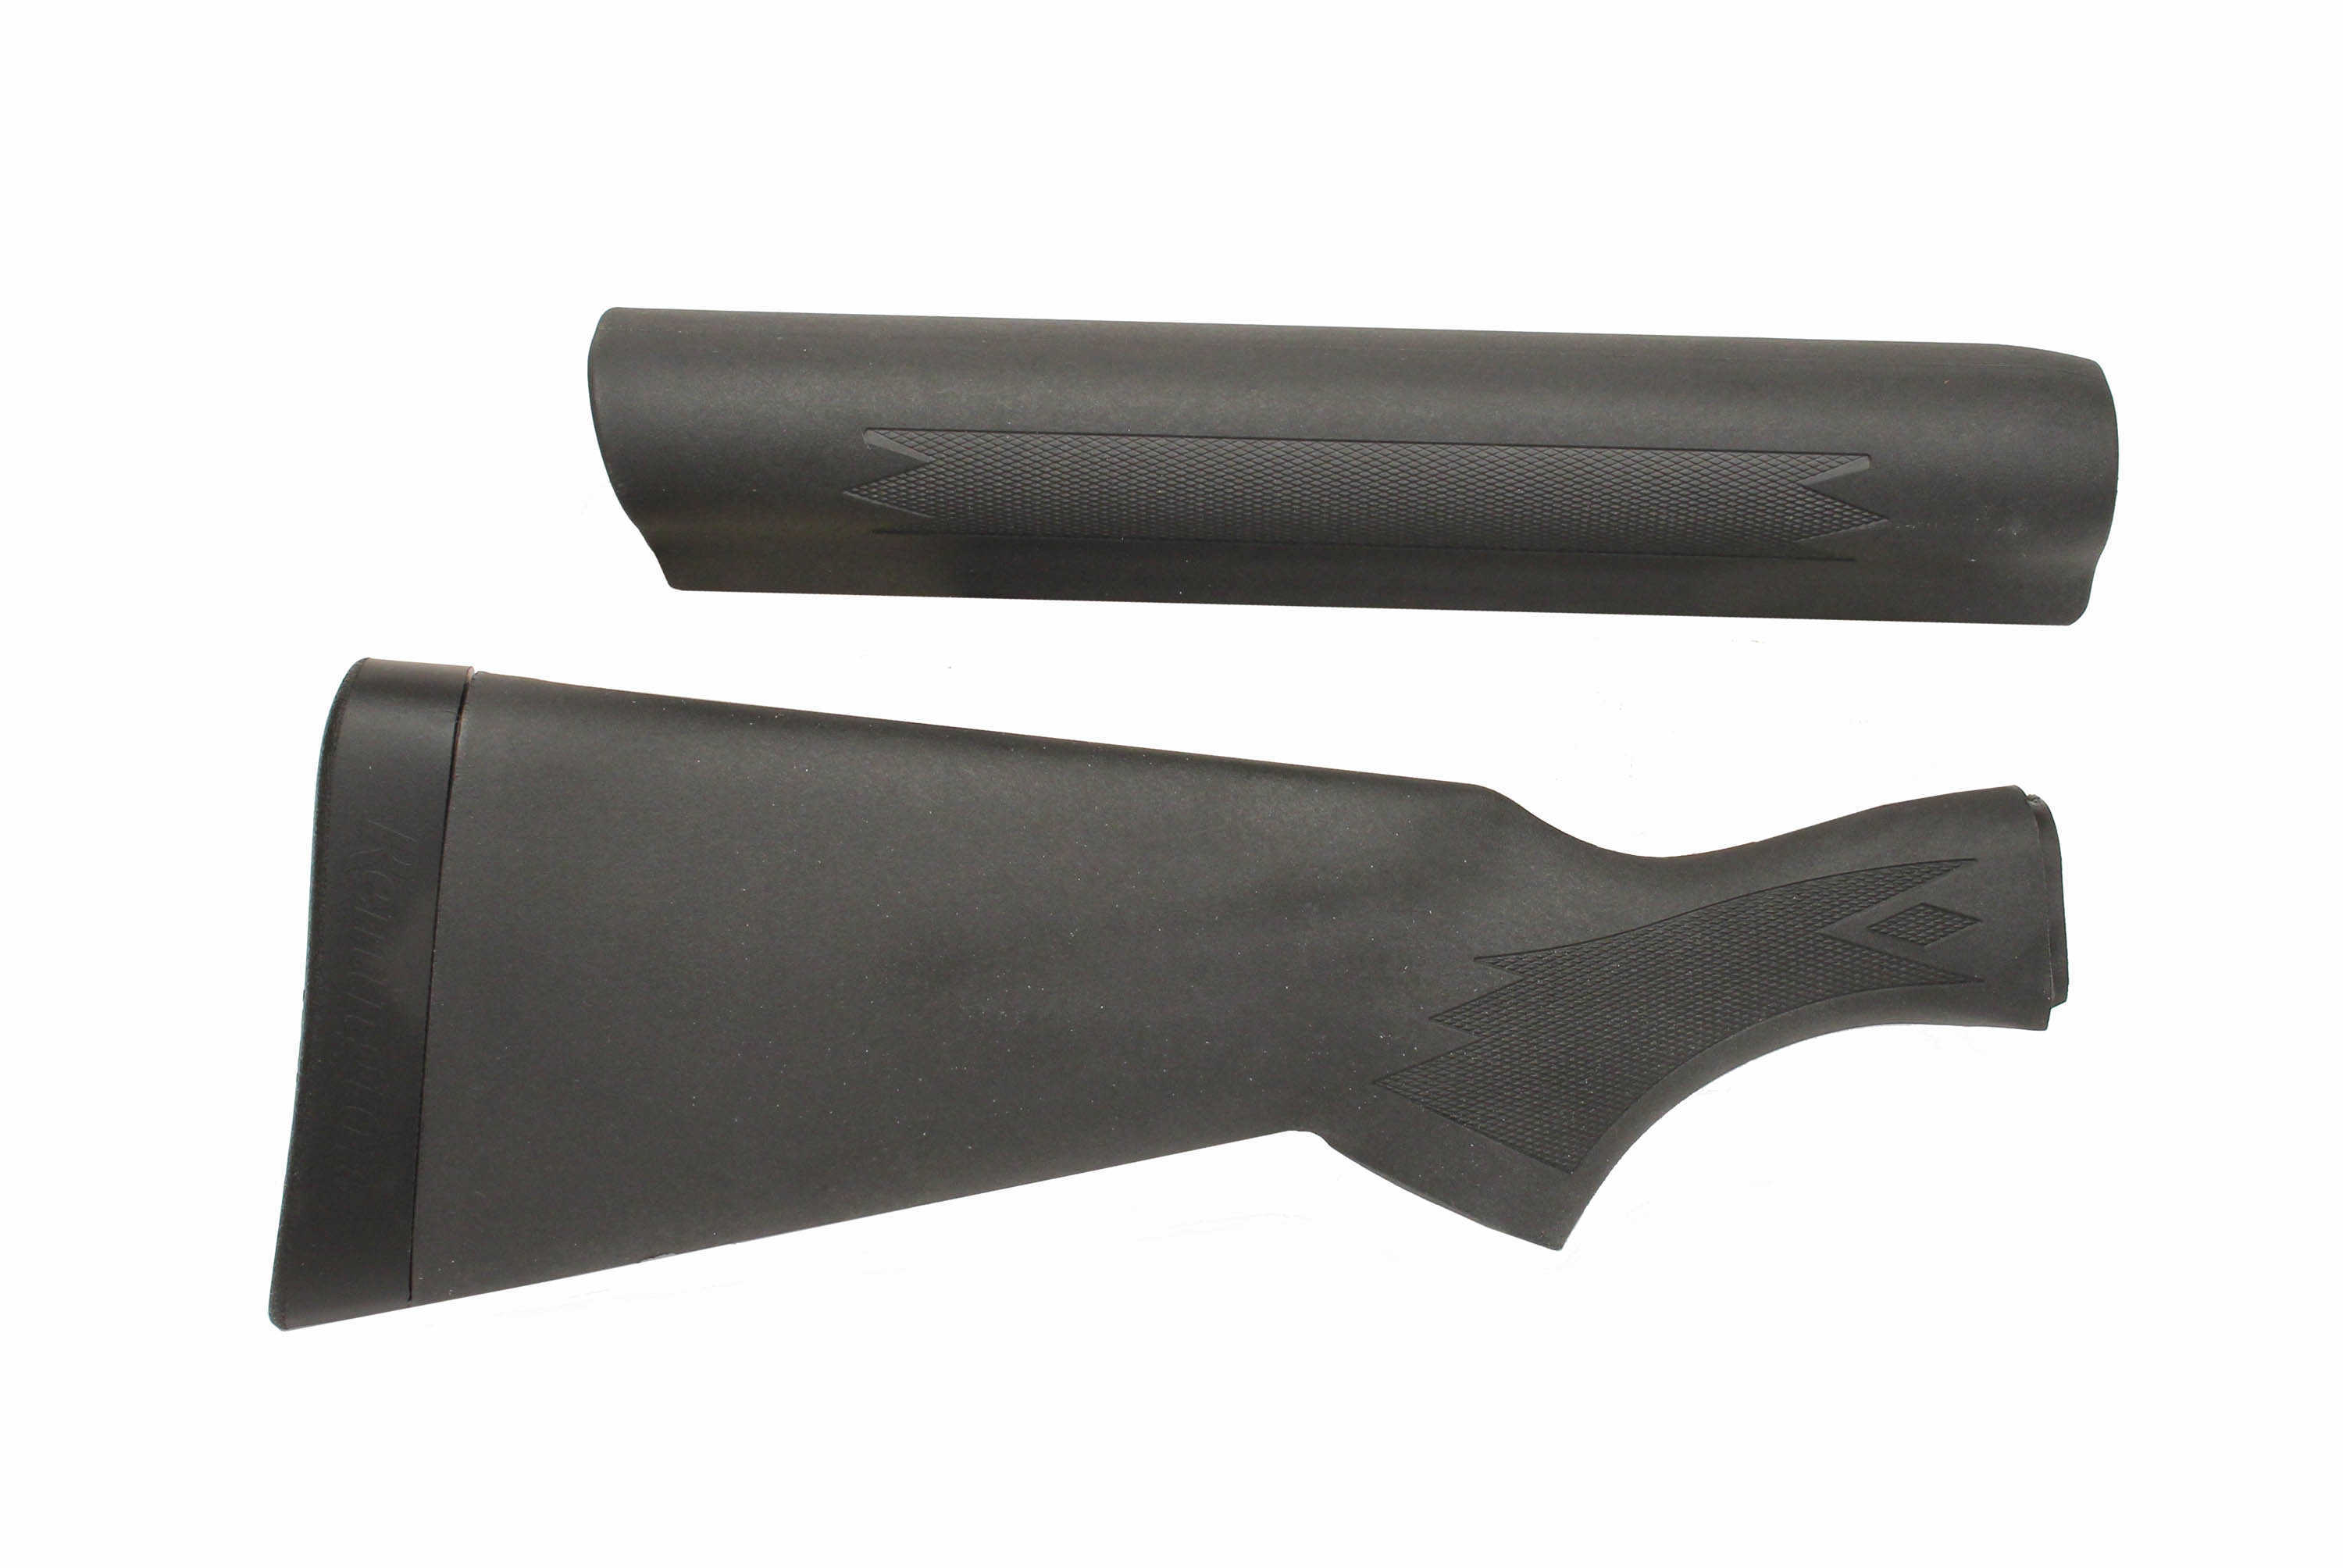 Remington 1100/11-87 12 Gauge Shotgun Stock/Forend Kit 18610 Black Synthetic